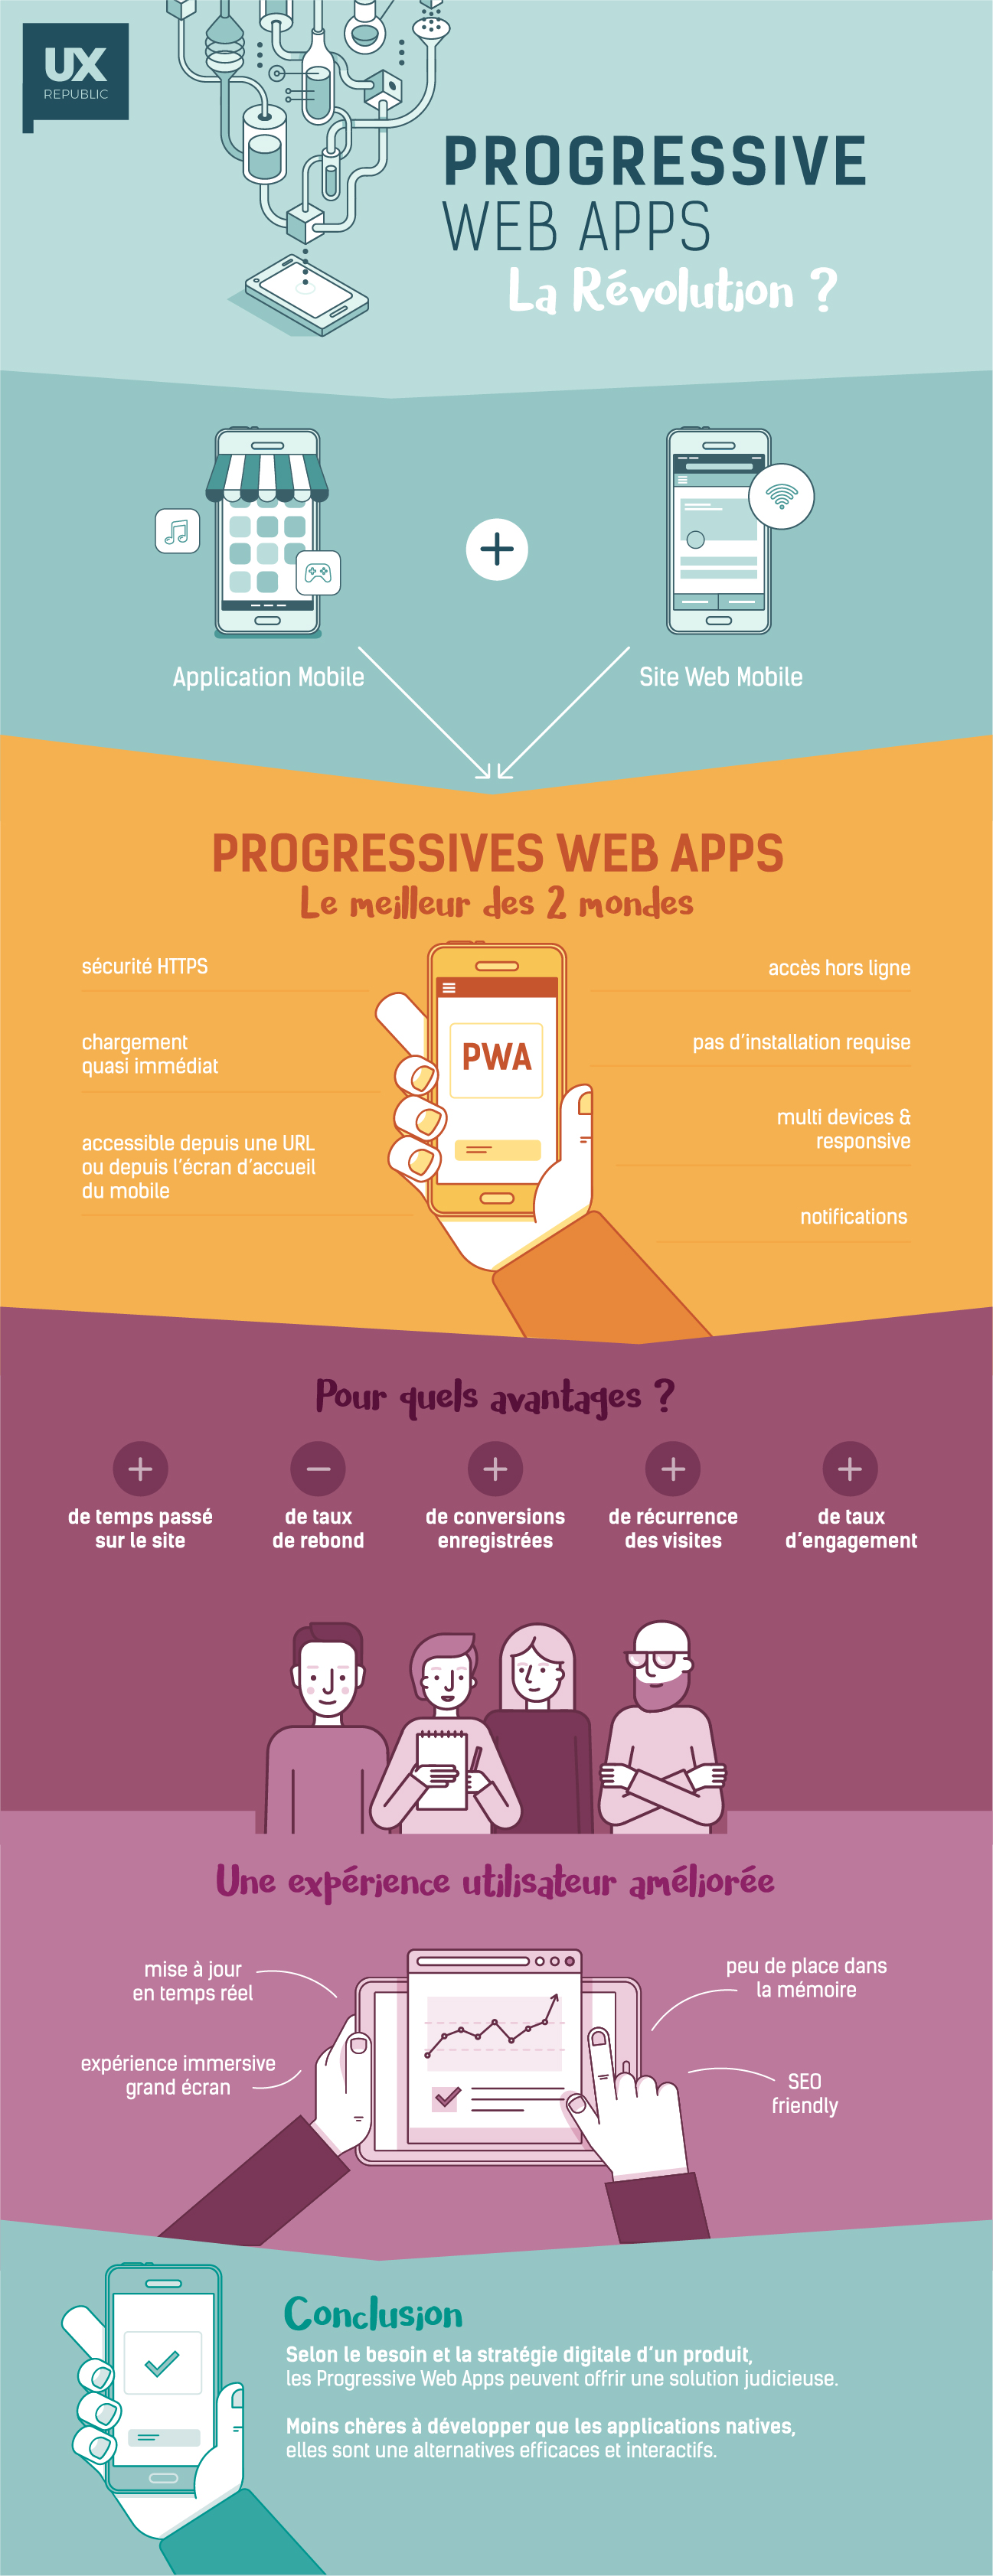 Progressive web apps infographie UX Republic